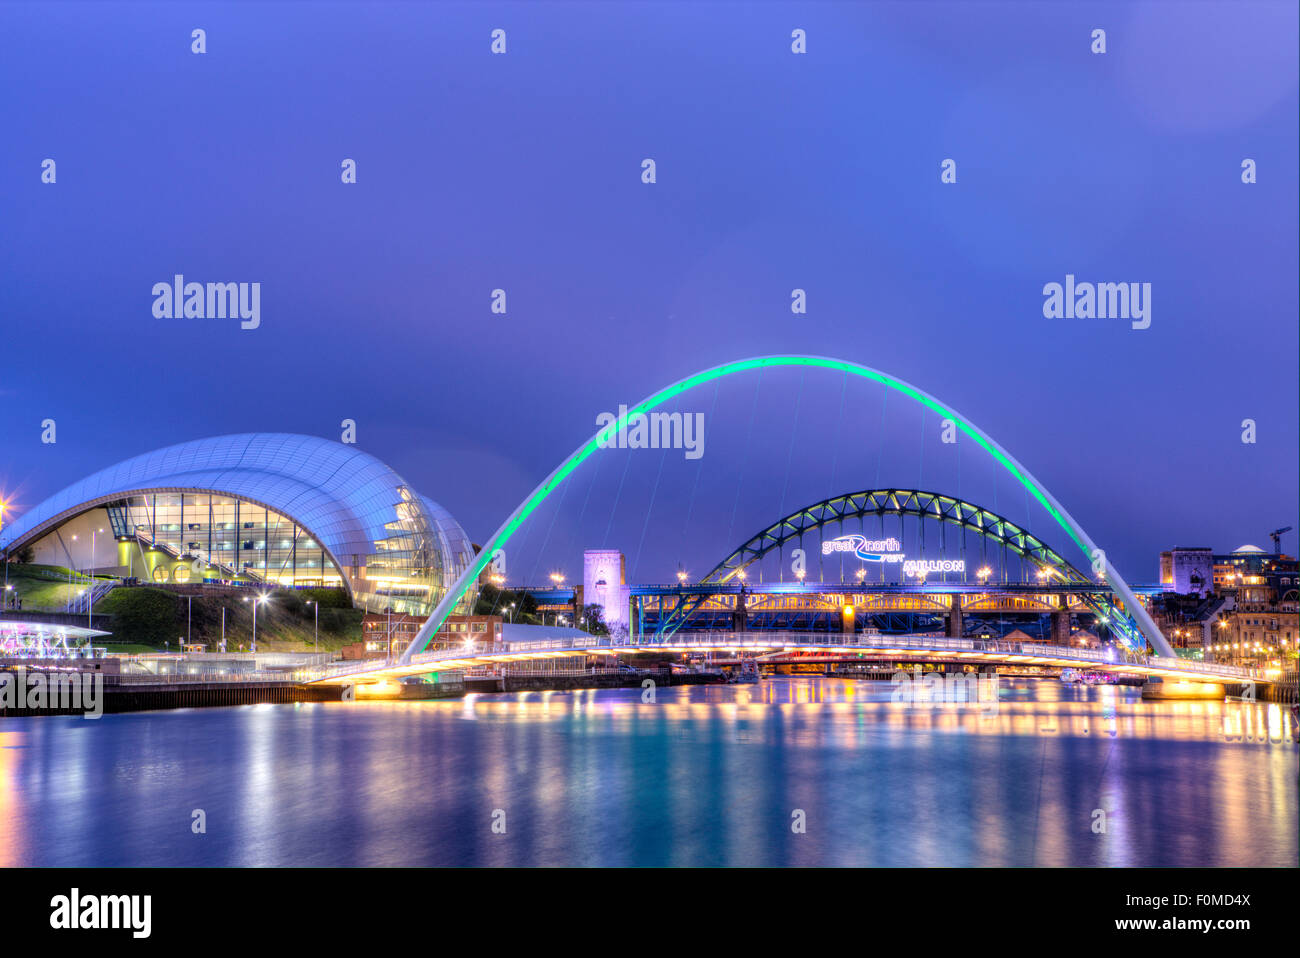 La rivière Tyne, Gateshead/Newcastle, Angleterre, montrant le Millennium Bridge, le Tyne Bridge et le Sage Gateshead Arts Centre Banque D'Images